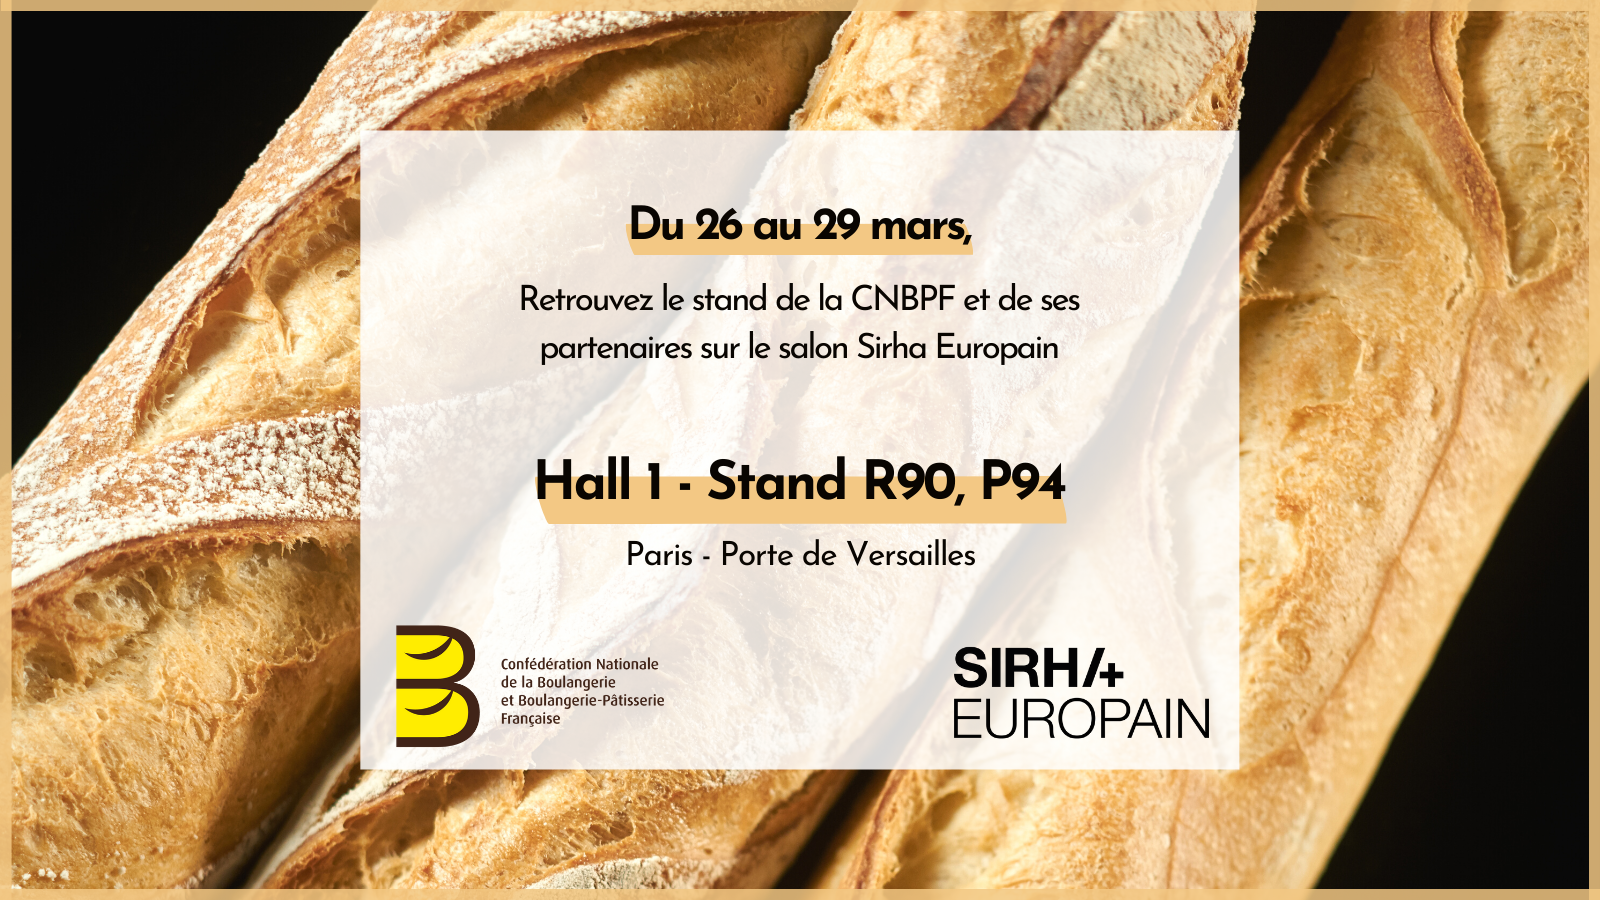 Le salon Sirha Europain se tiendra du 26 au 29 mars 2022, à Paris Porte de Versailles – Hall 1.